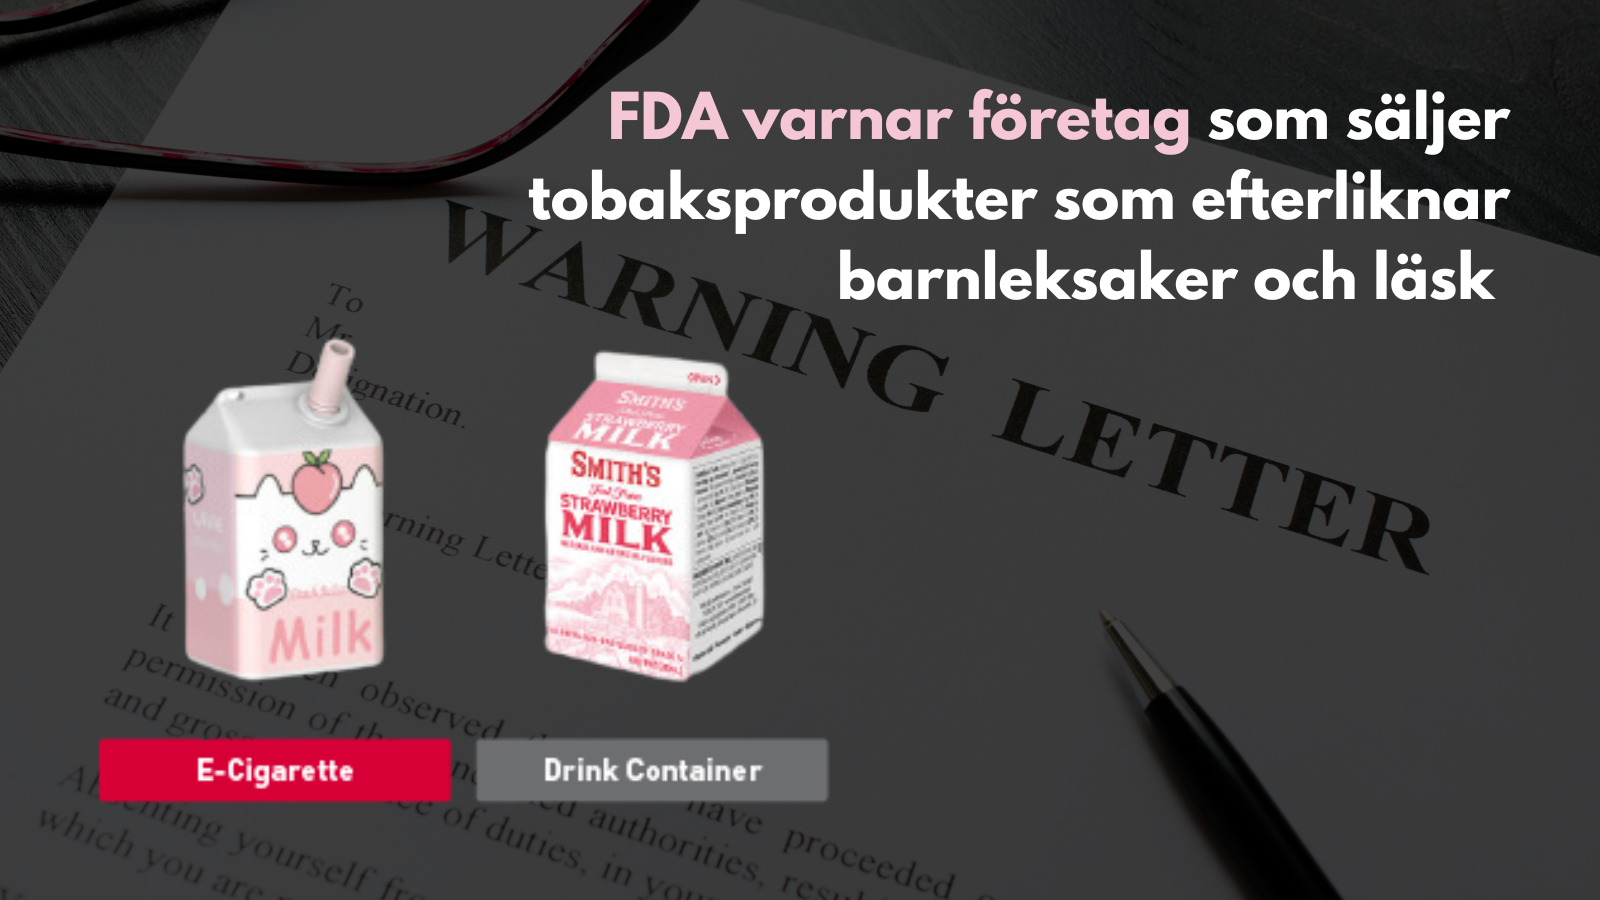 FDA varnar företag som säljer tobaksprodukter som efterliknar barnleksaker och läsk